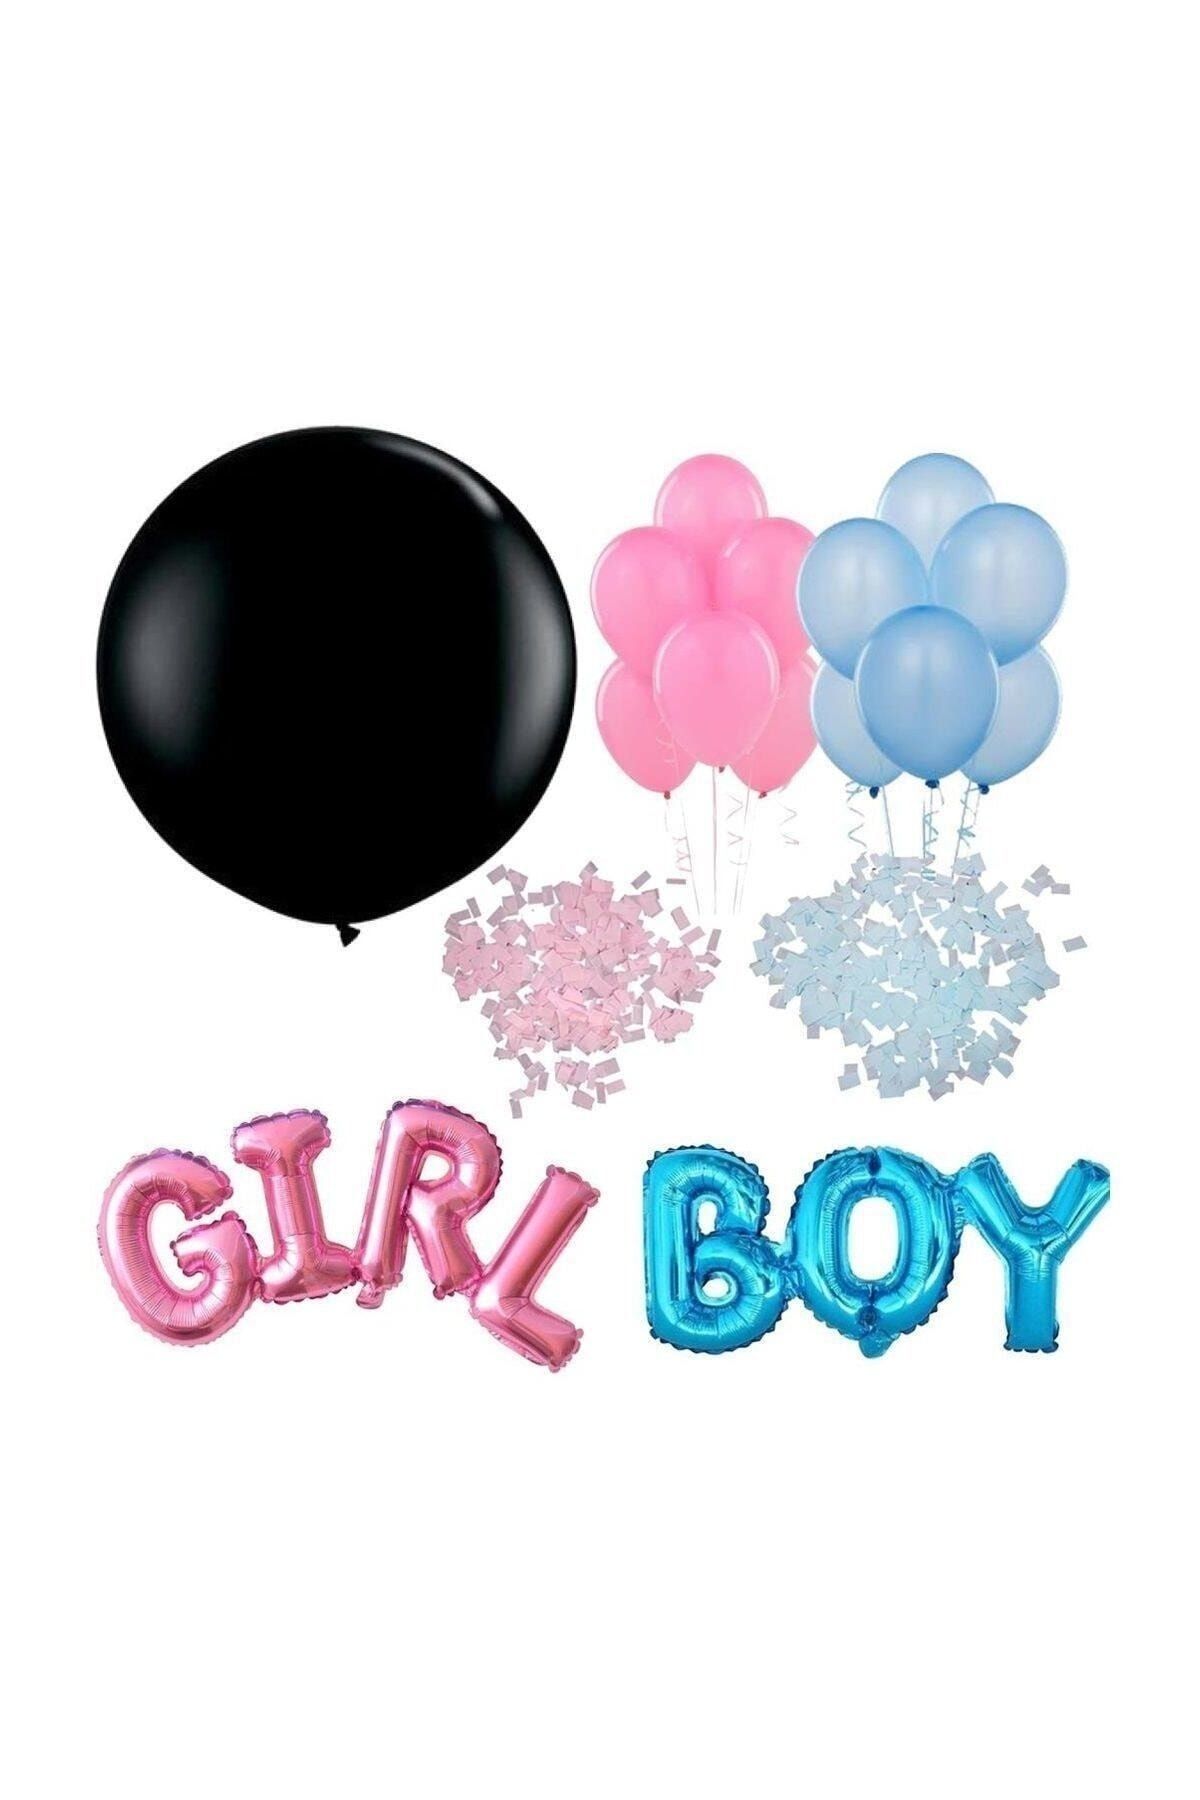 BİDOLUMUTLULUK Bebek Cinsiyet Belirleme Balonu Paketi, Öğrenme Partisi Malzemesi